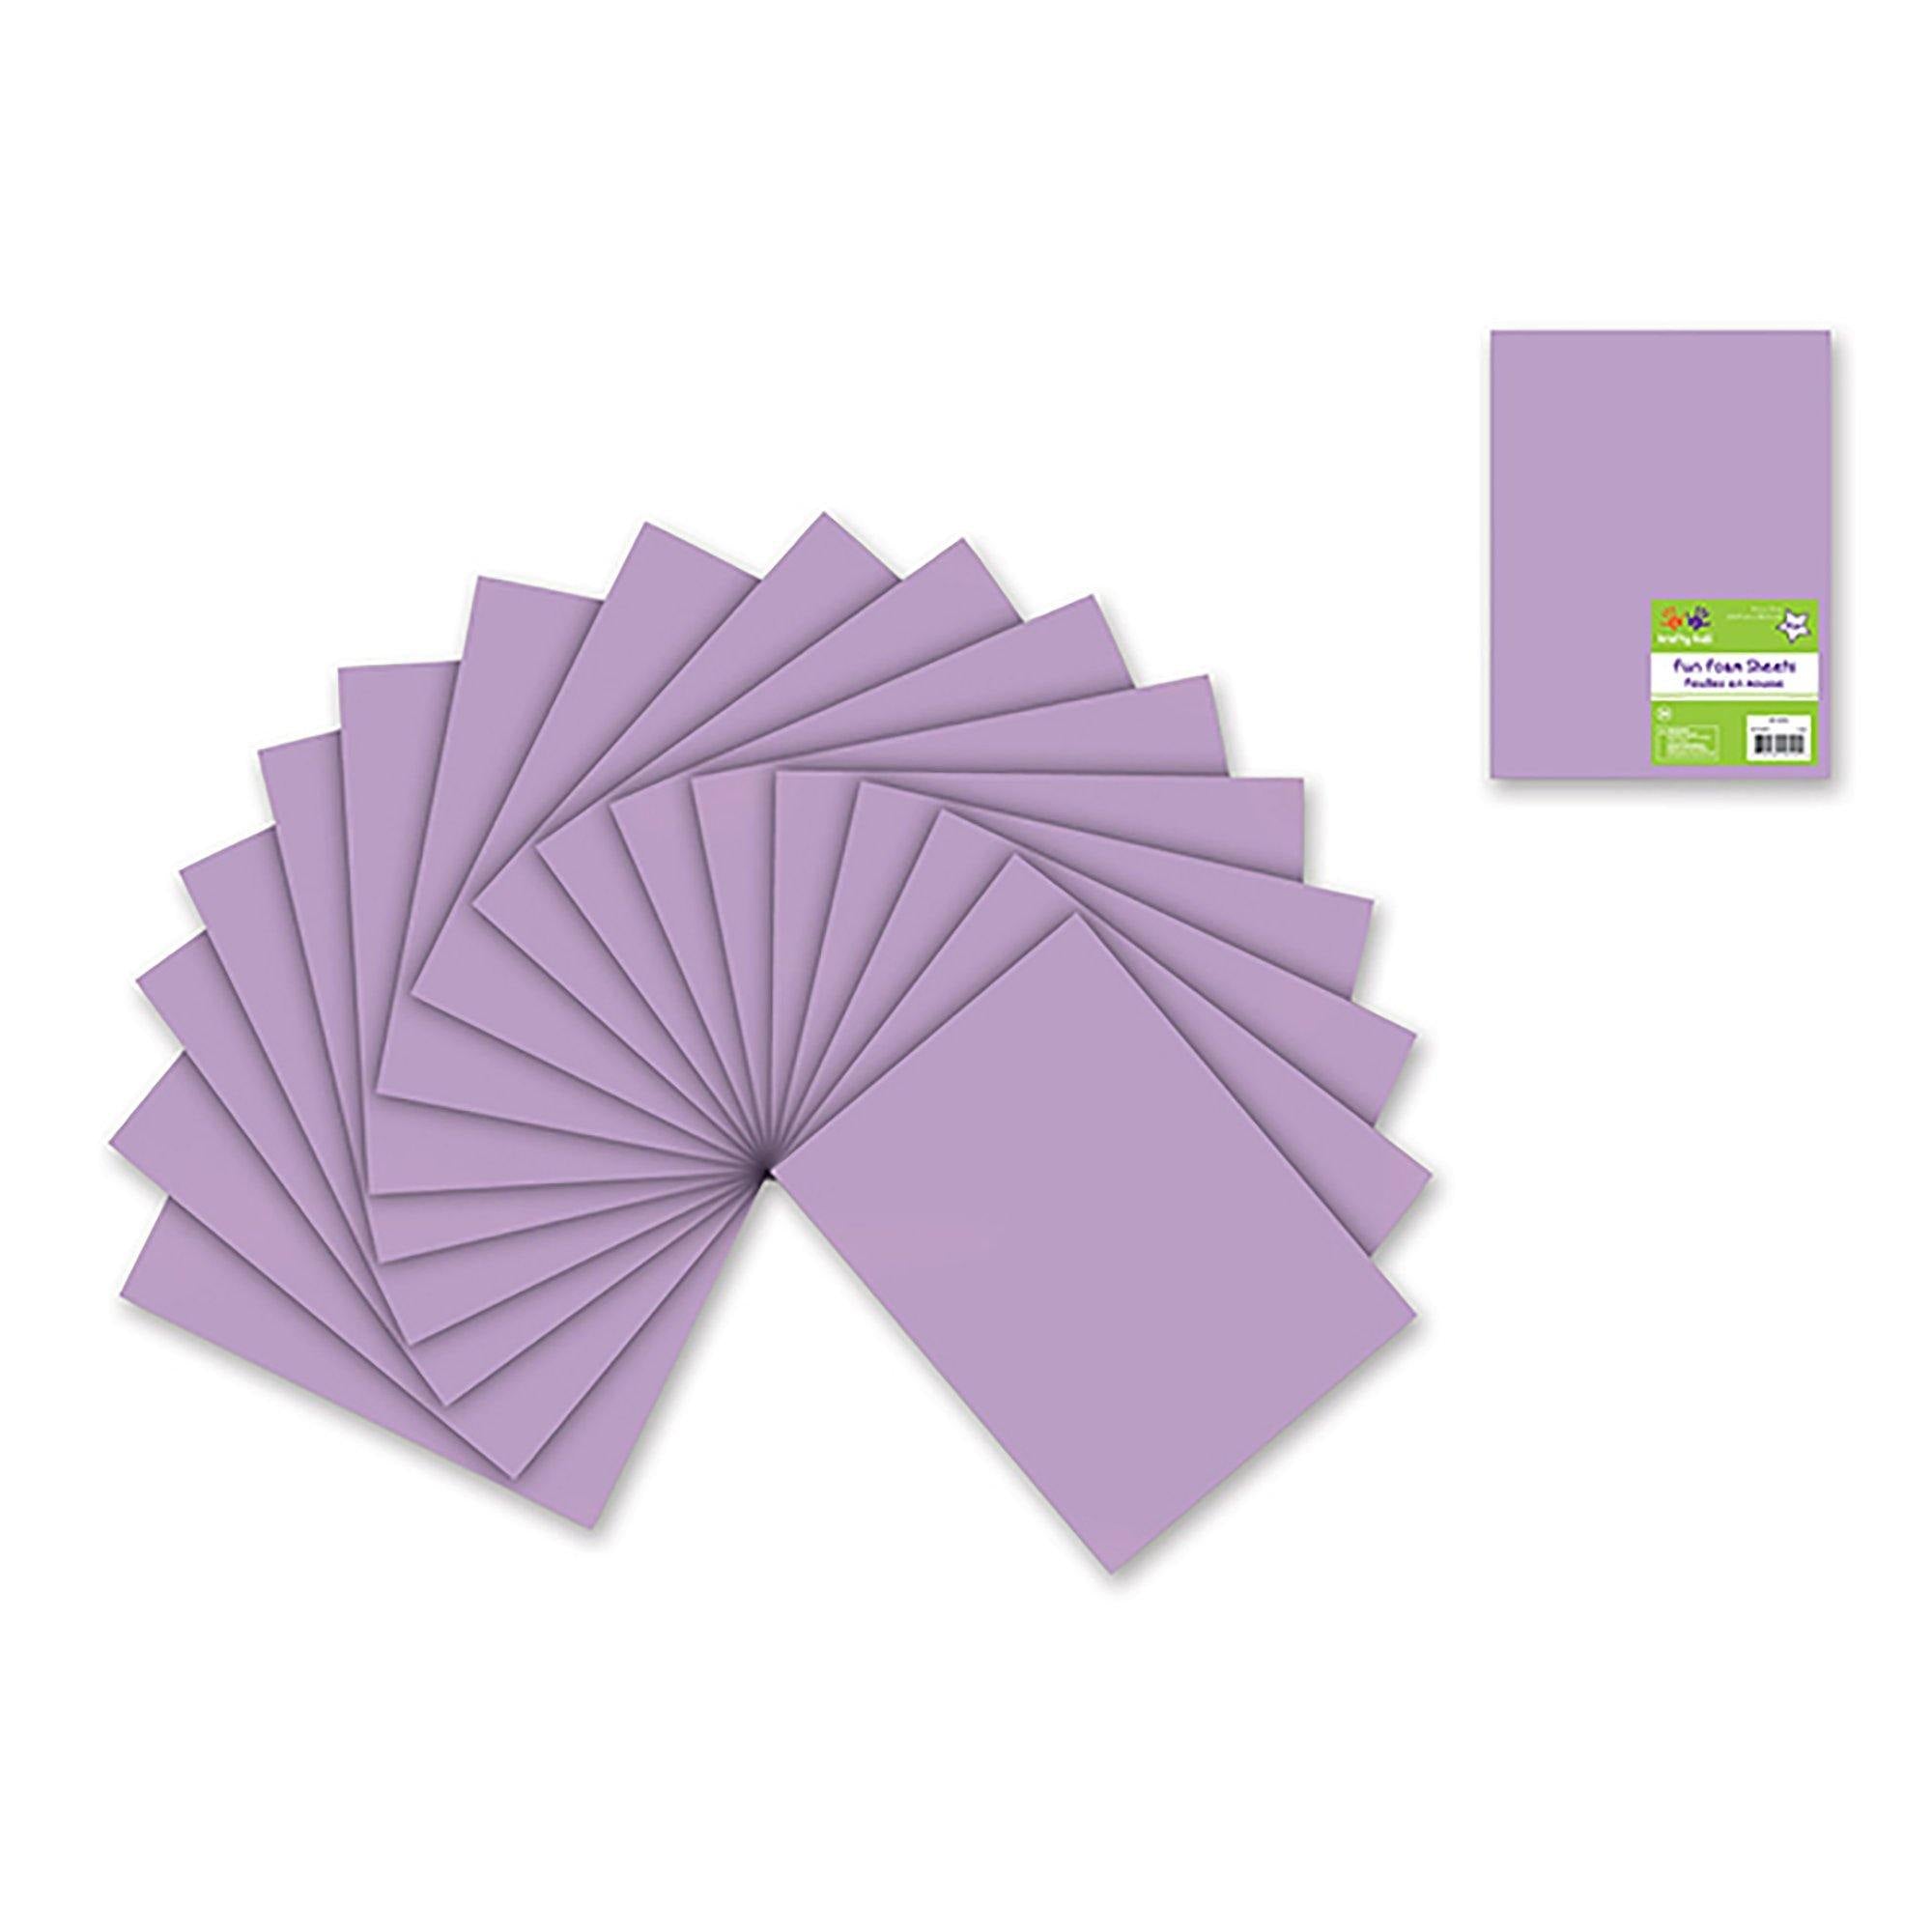 Lilac Fun Foam Sheets: 9"X12" Bulk 2Mm Barcoded Sheets - Dollar Max Dépôt